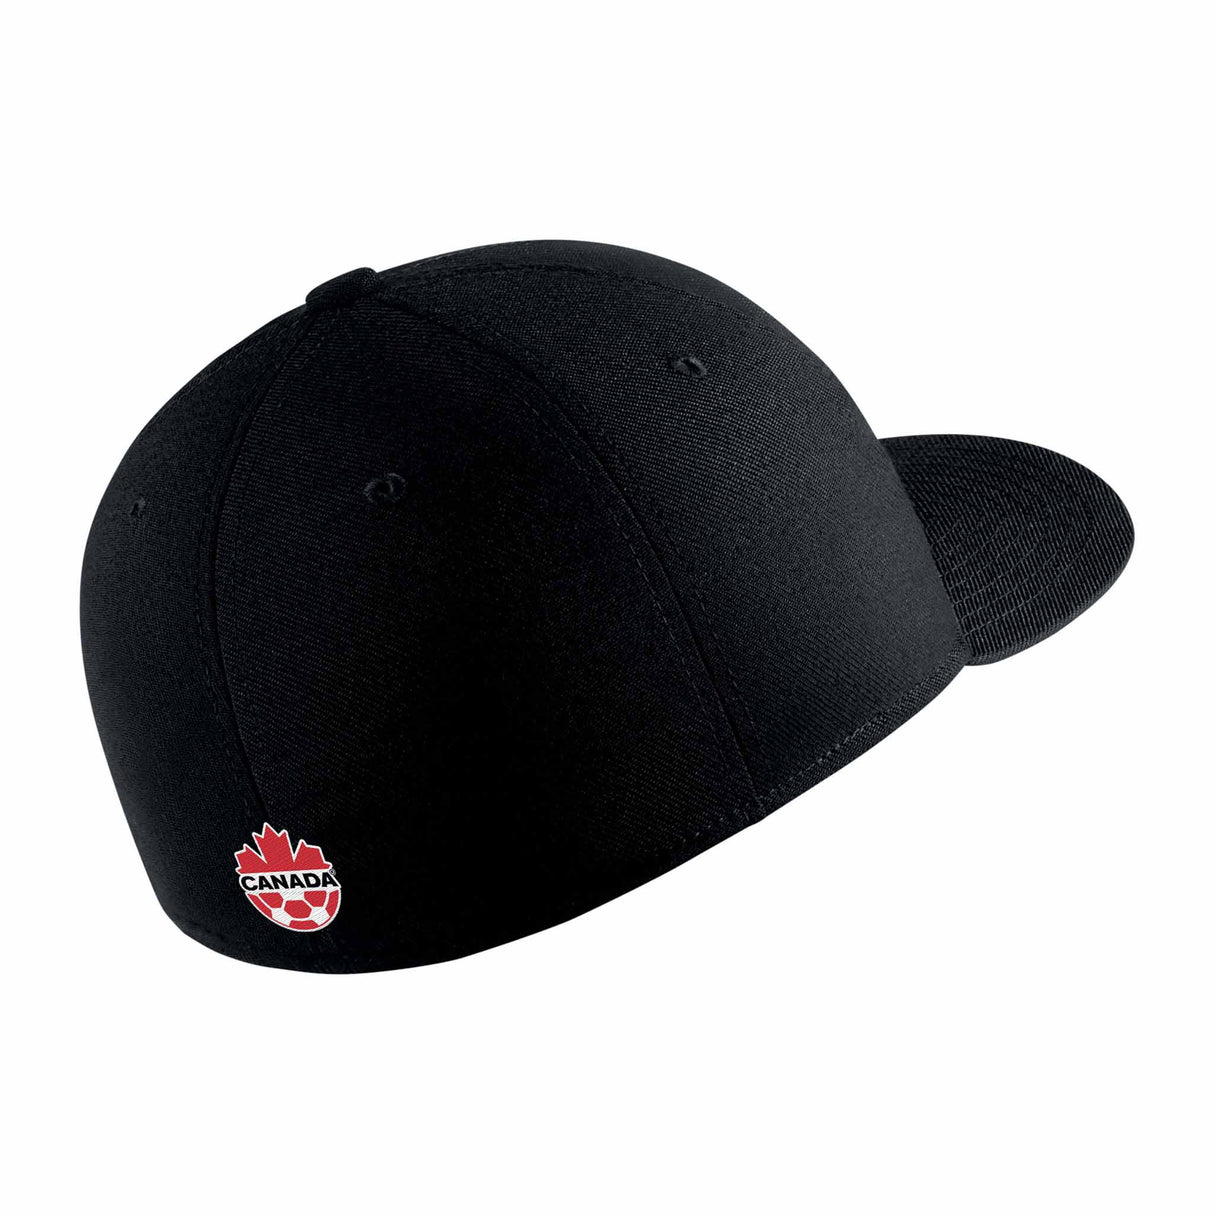 Nike Youth Swoosh Flex Canada Soccer casquette de l'équipe nationale canadienne - Noir